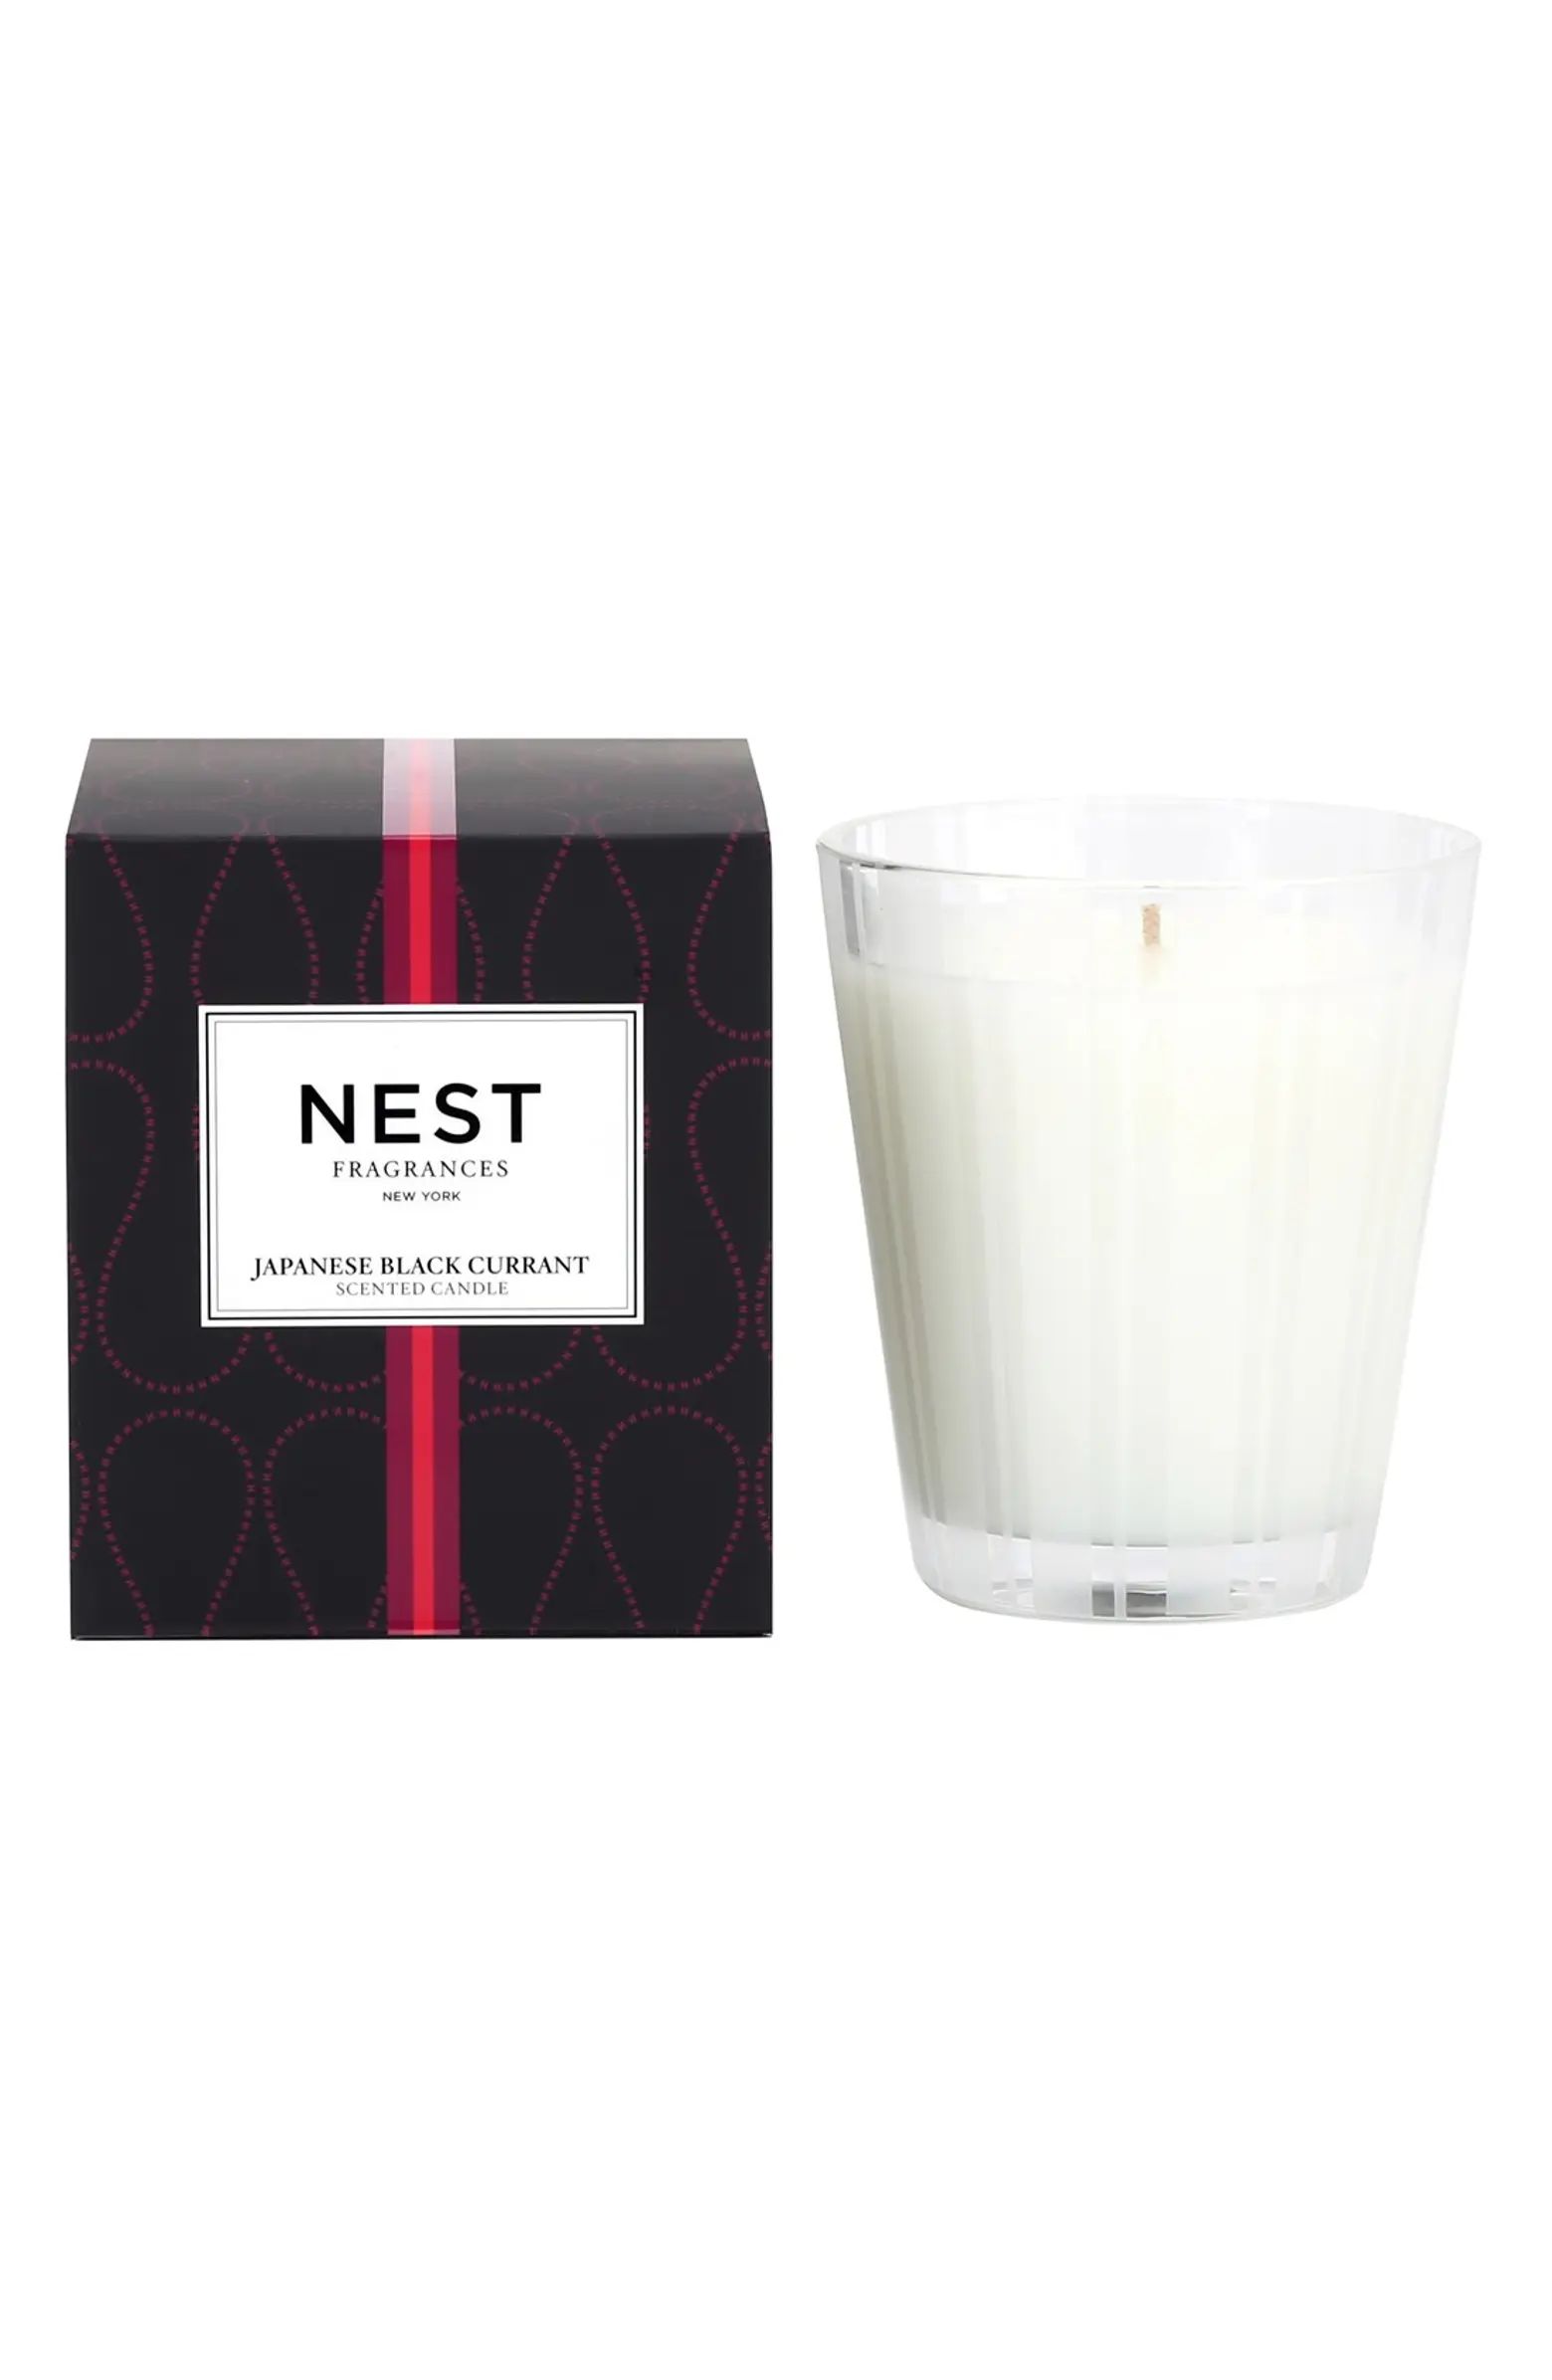 NEST Fragrances 'Japanese Black Currant' Candle | Nordstrom Rack